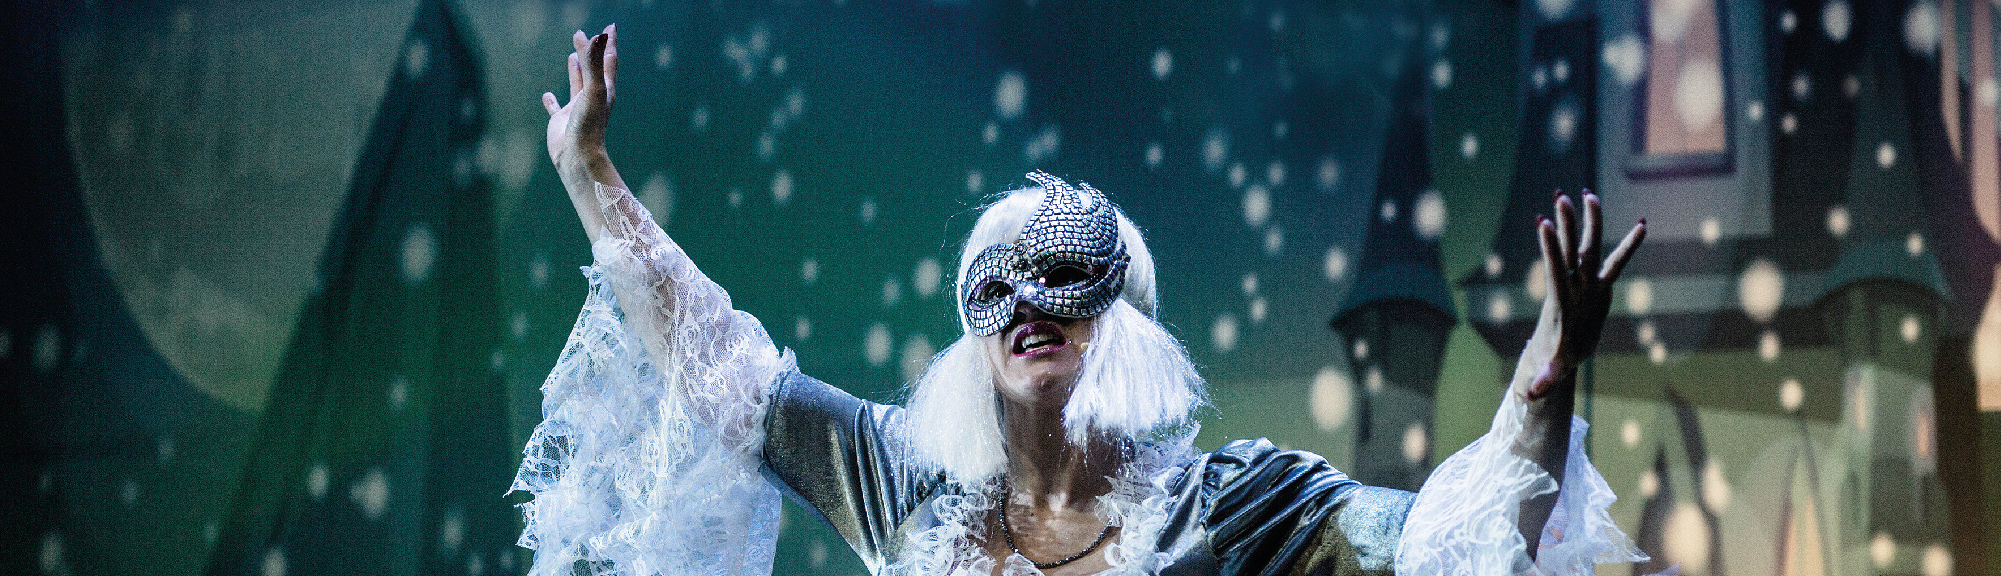 Niedziela z Bajką: Spektakl “Śnieżna Królowa – opowieść zimowa”